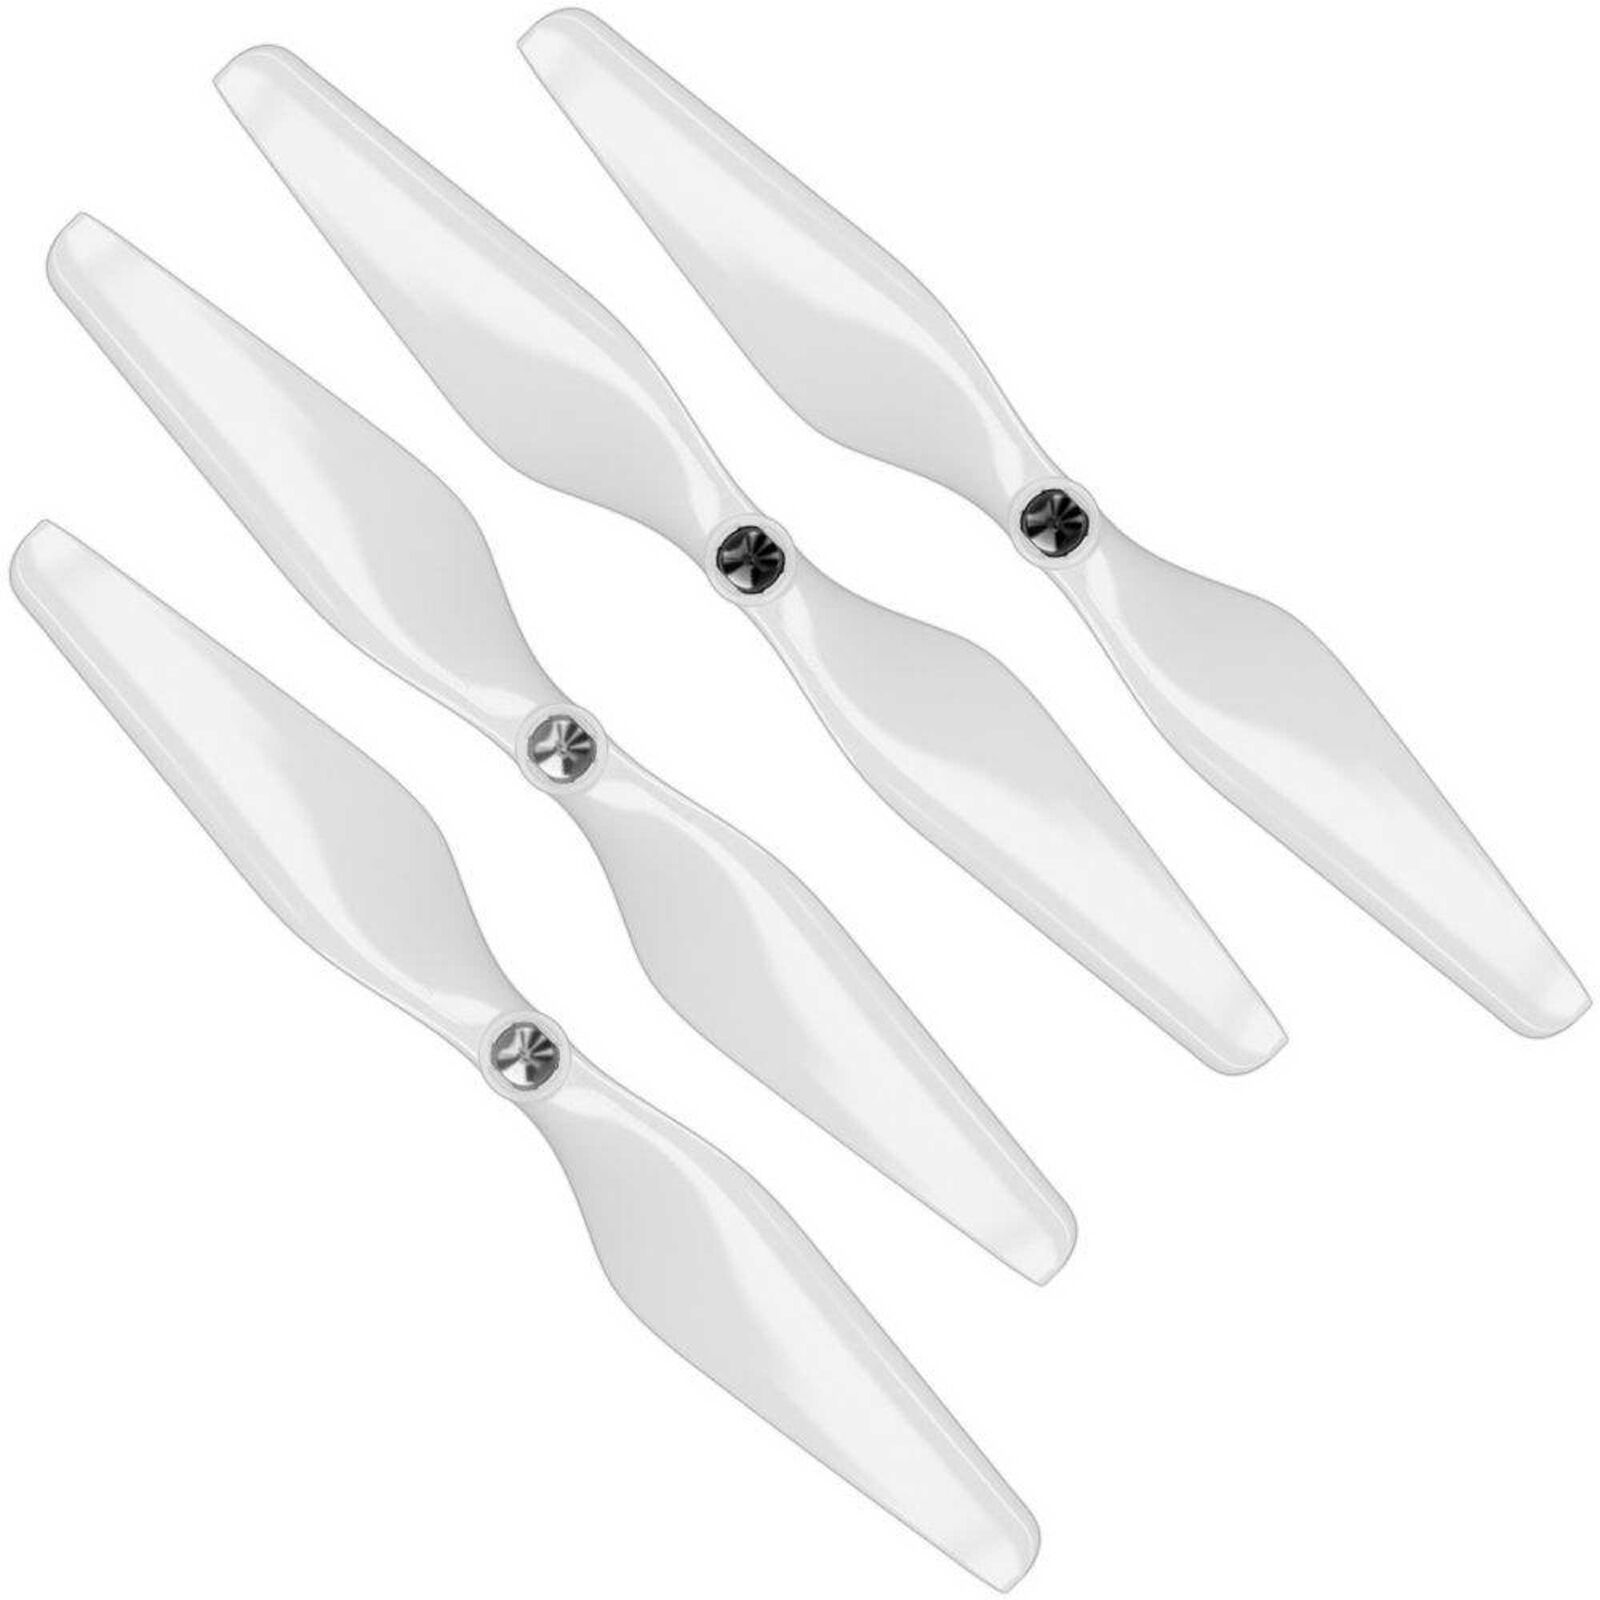 10 x 4.5 MR-KR Propeller C Set, White (4): GoPro KARMA